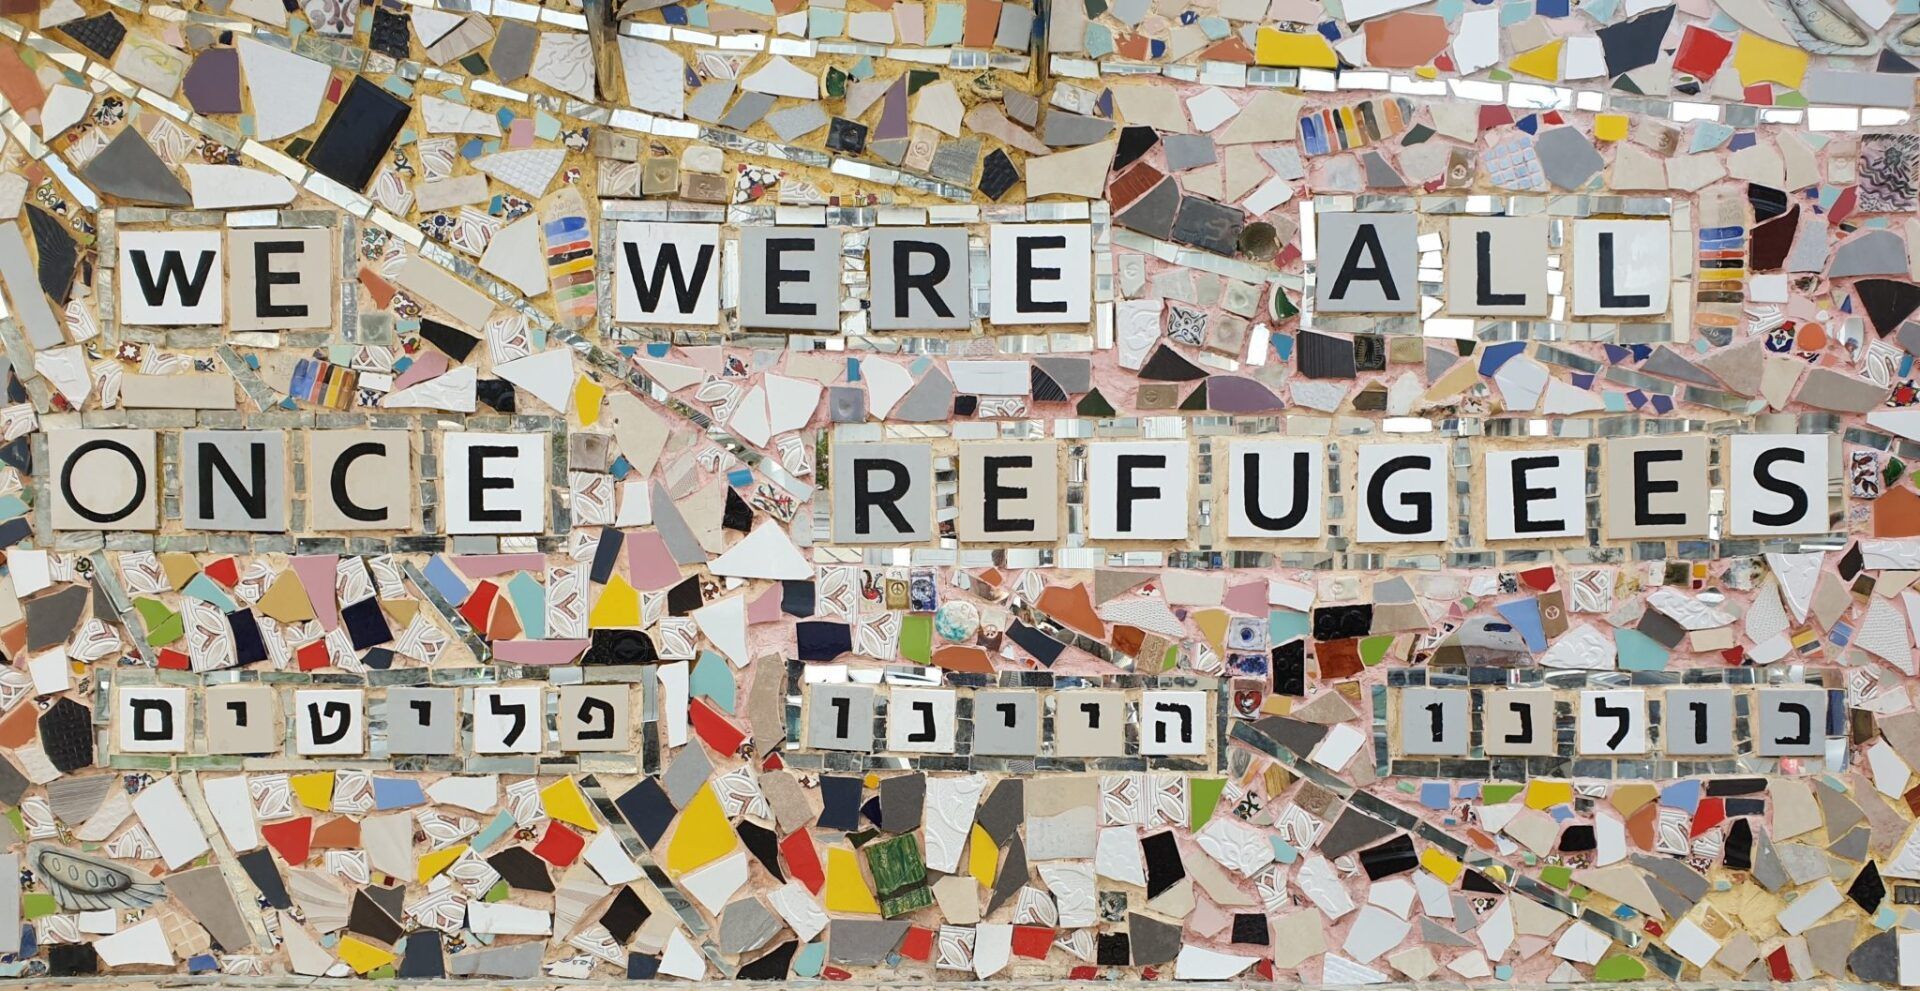 recorte de lajotas escrito ''we were all once refugees'' em tradução livre 